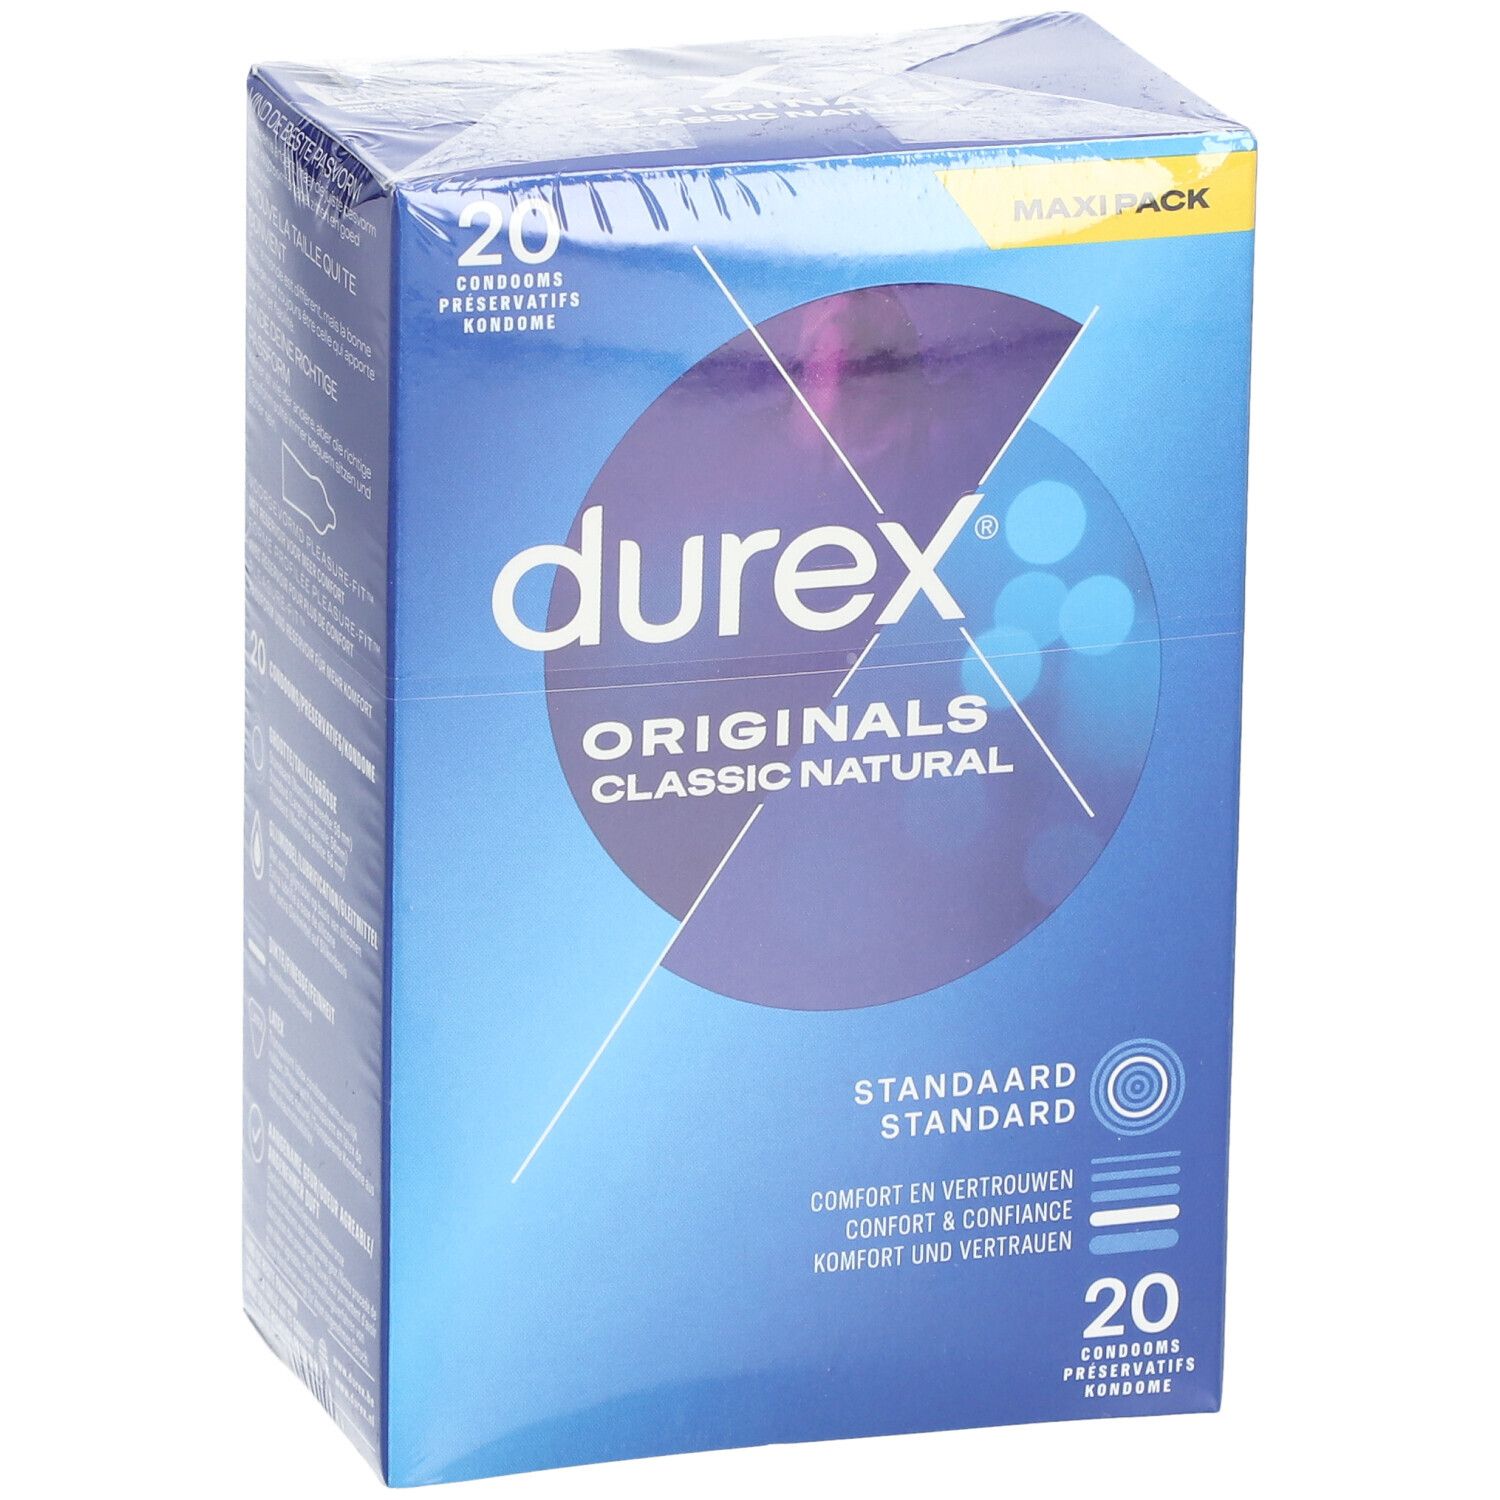 Durex® Classic Natural